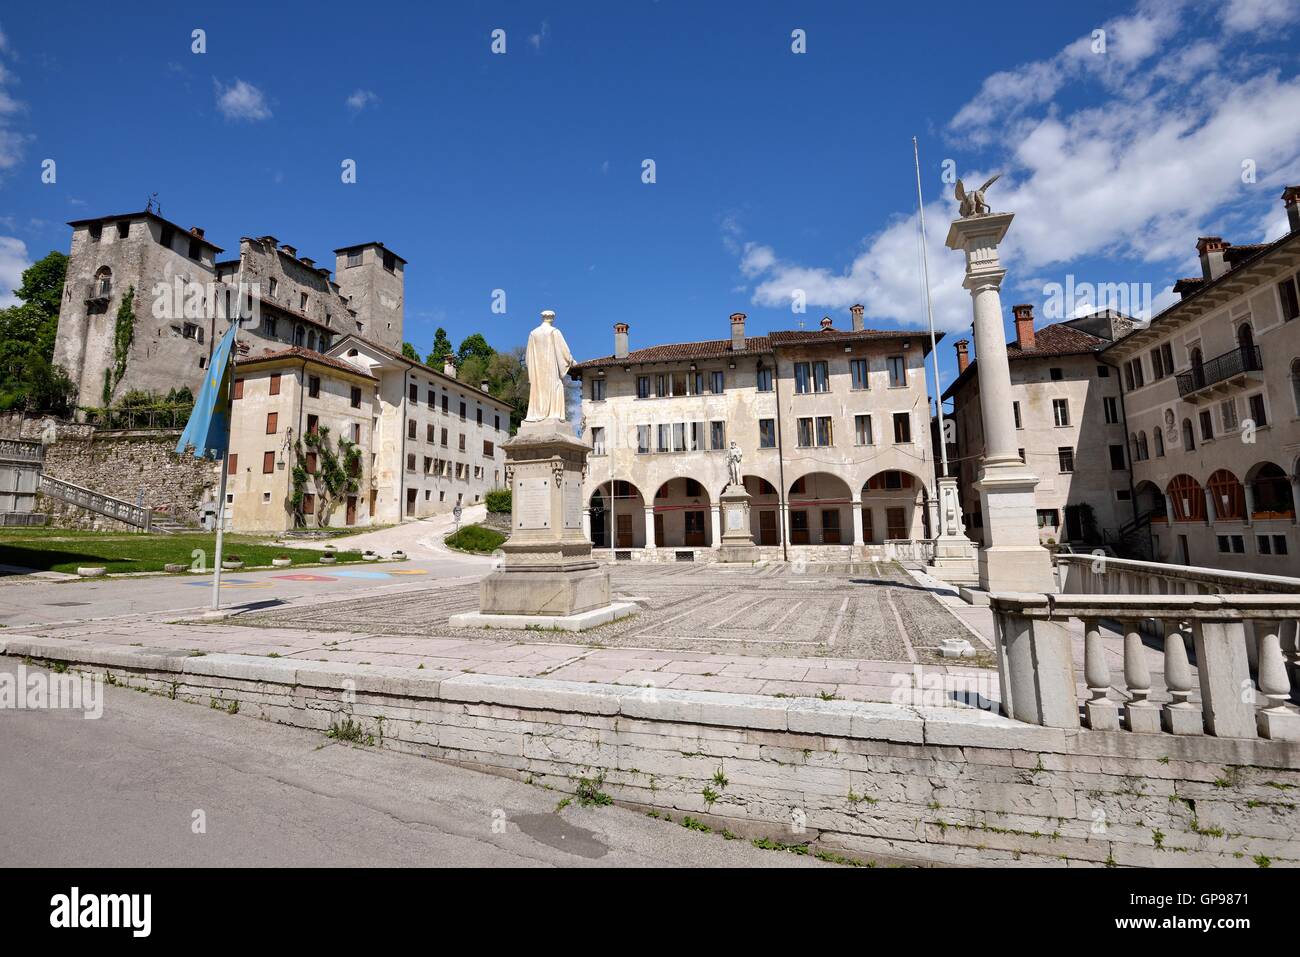 Piazza Maggiore with Alboino Castle in the background, Feltre, Belluno Province, Venetia, Italy Stock Photo